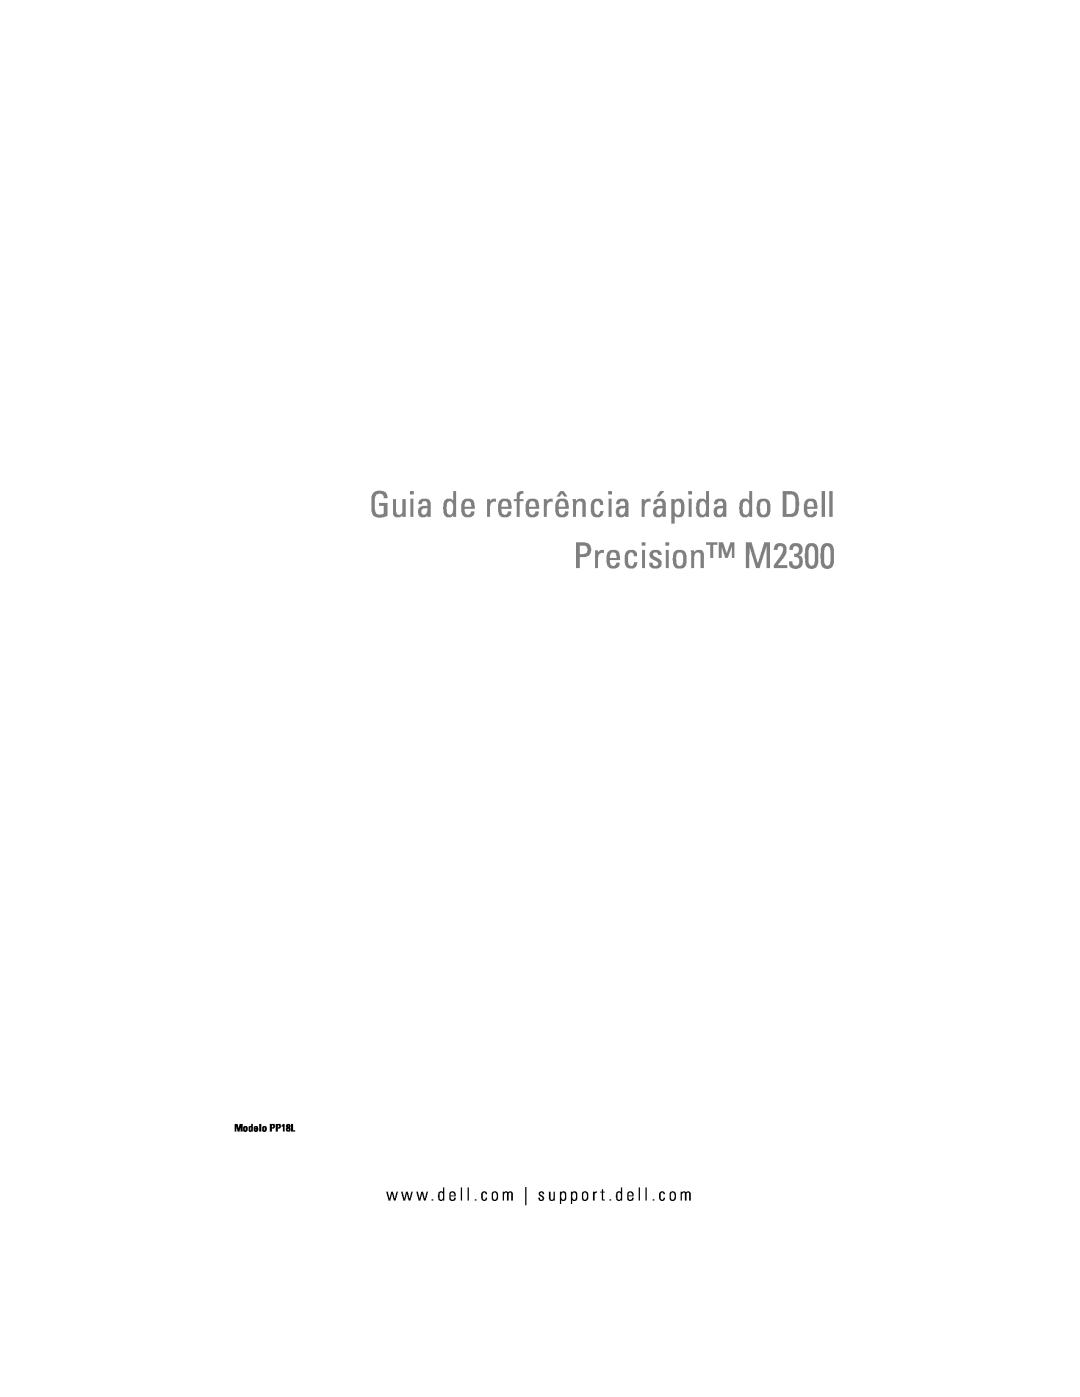 Dell manual Guia de referência rápida do Dell Precision M2300, Modelo PP18L 